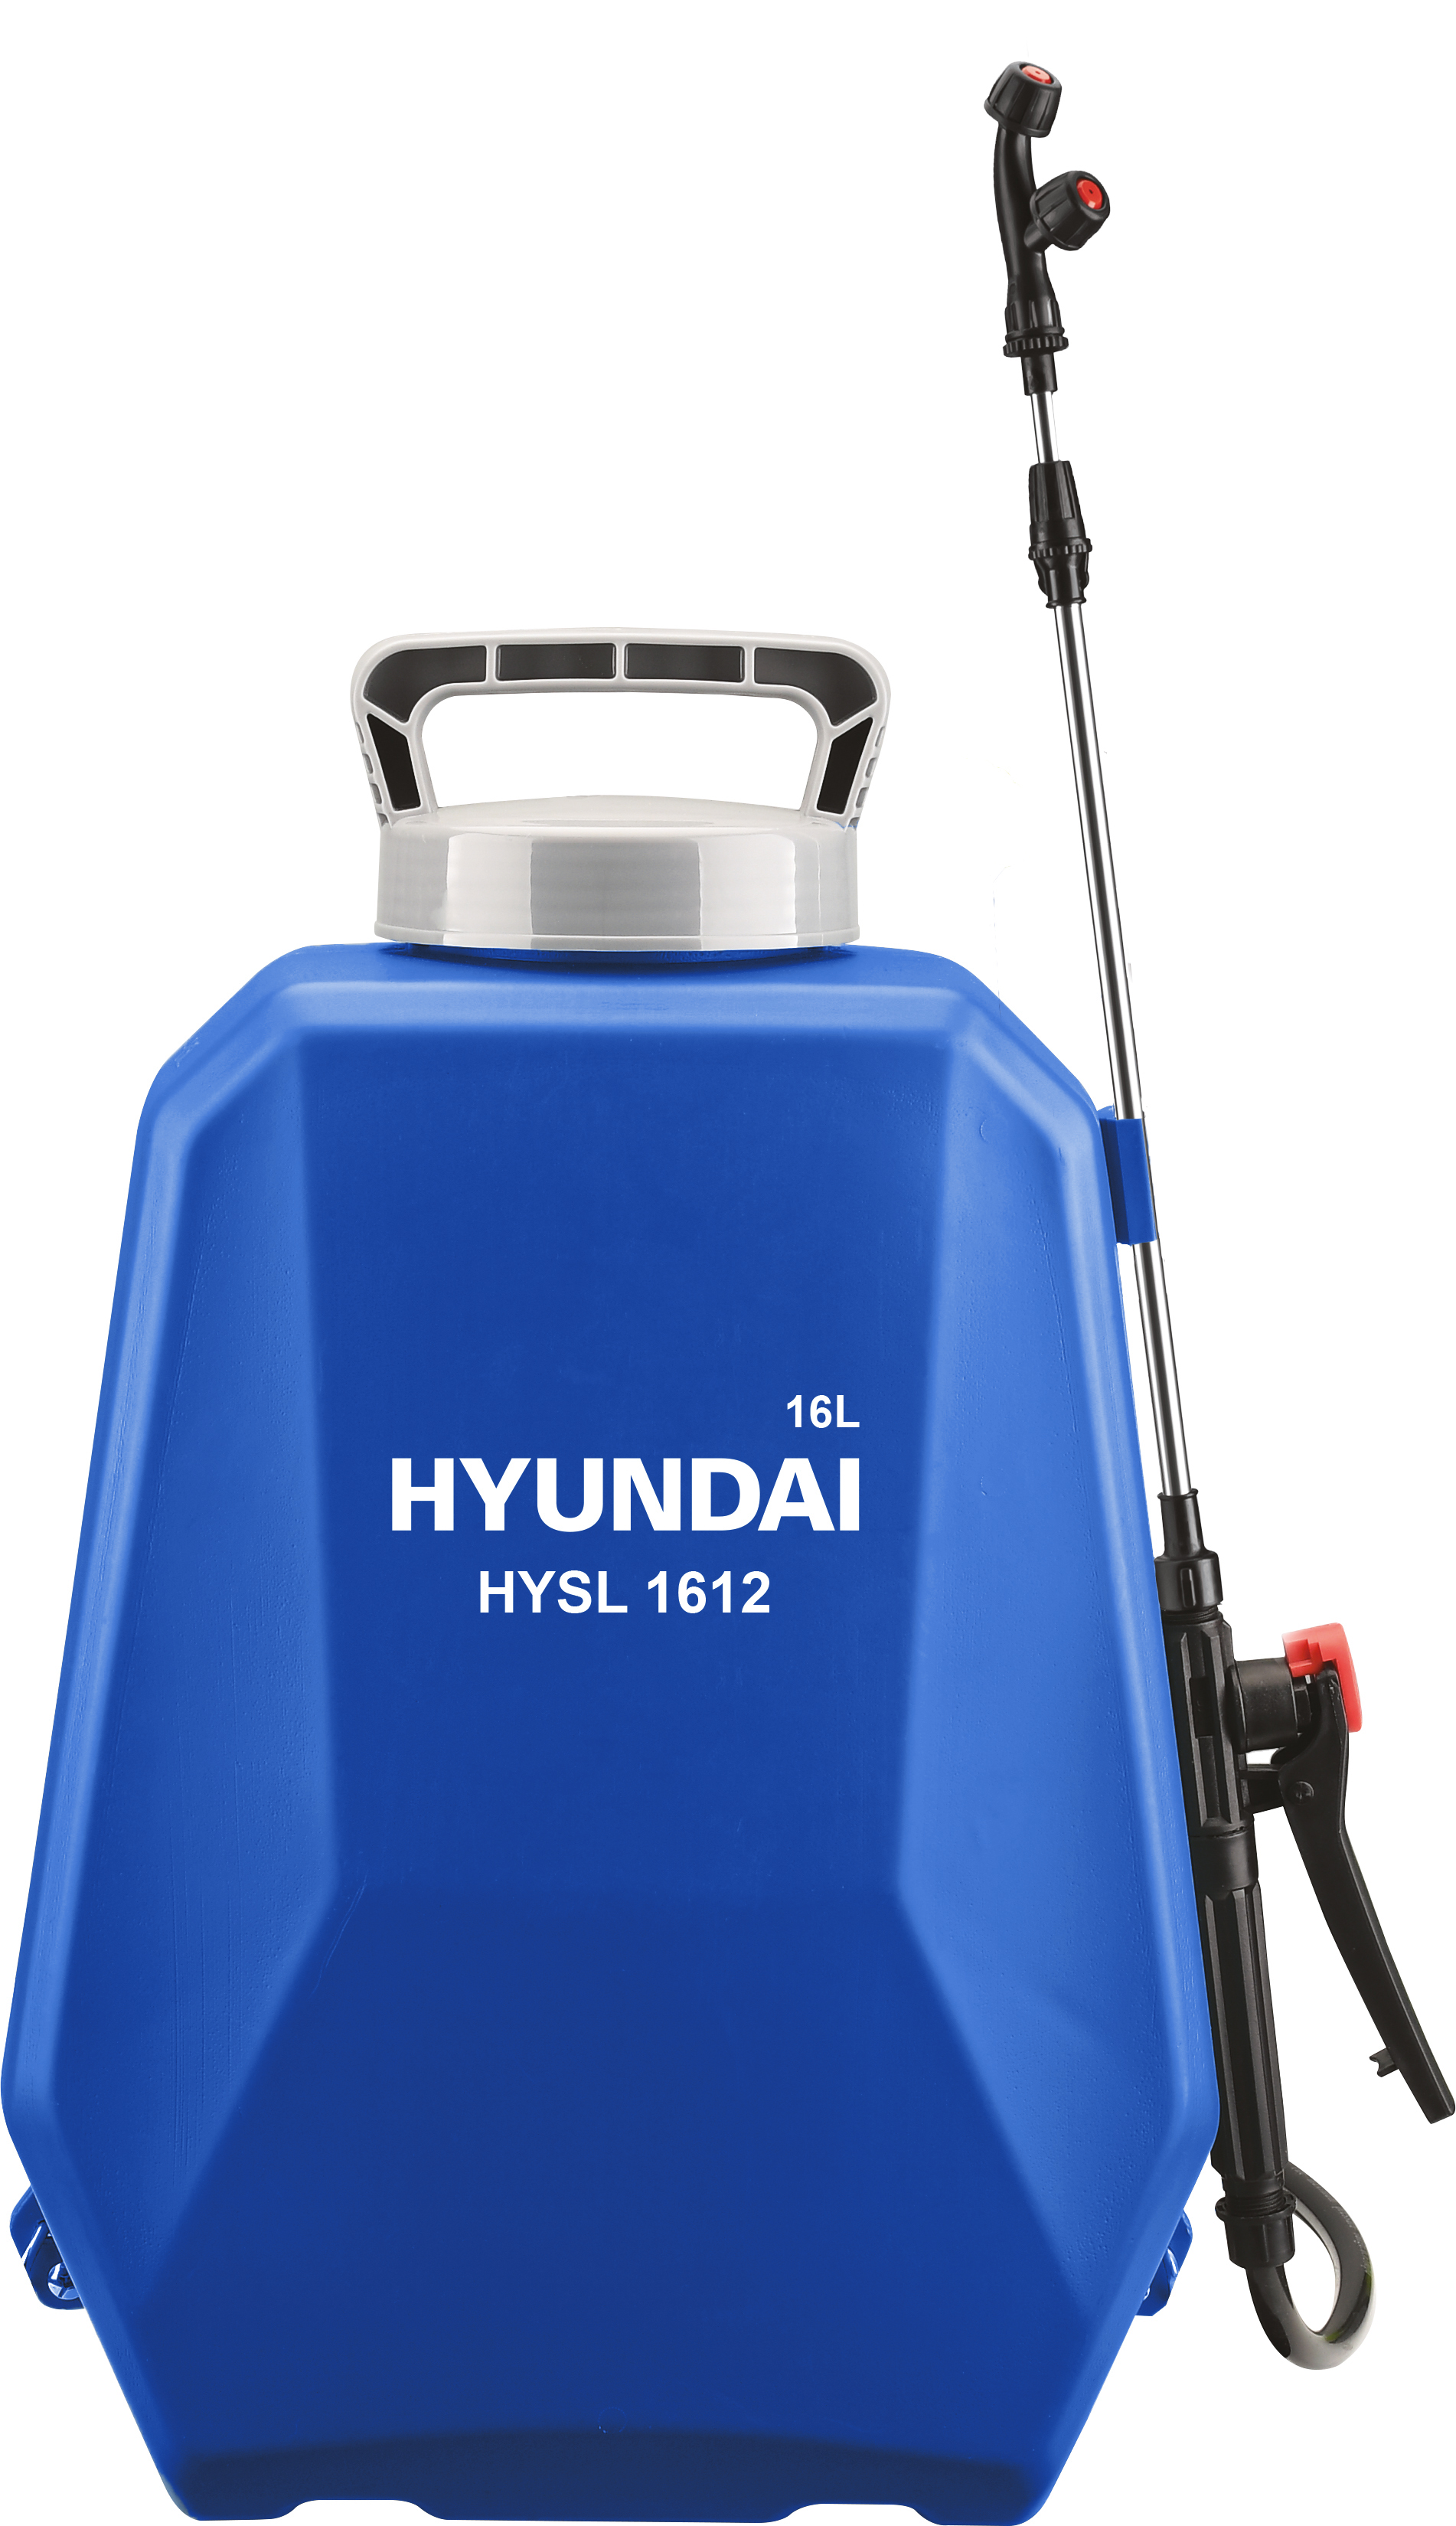 Аккумуляторный опрыскиватель Hyundai HYSL 1612 аккумуляторный опрыскиватель hyundai hysl 1612